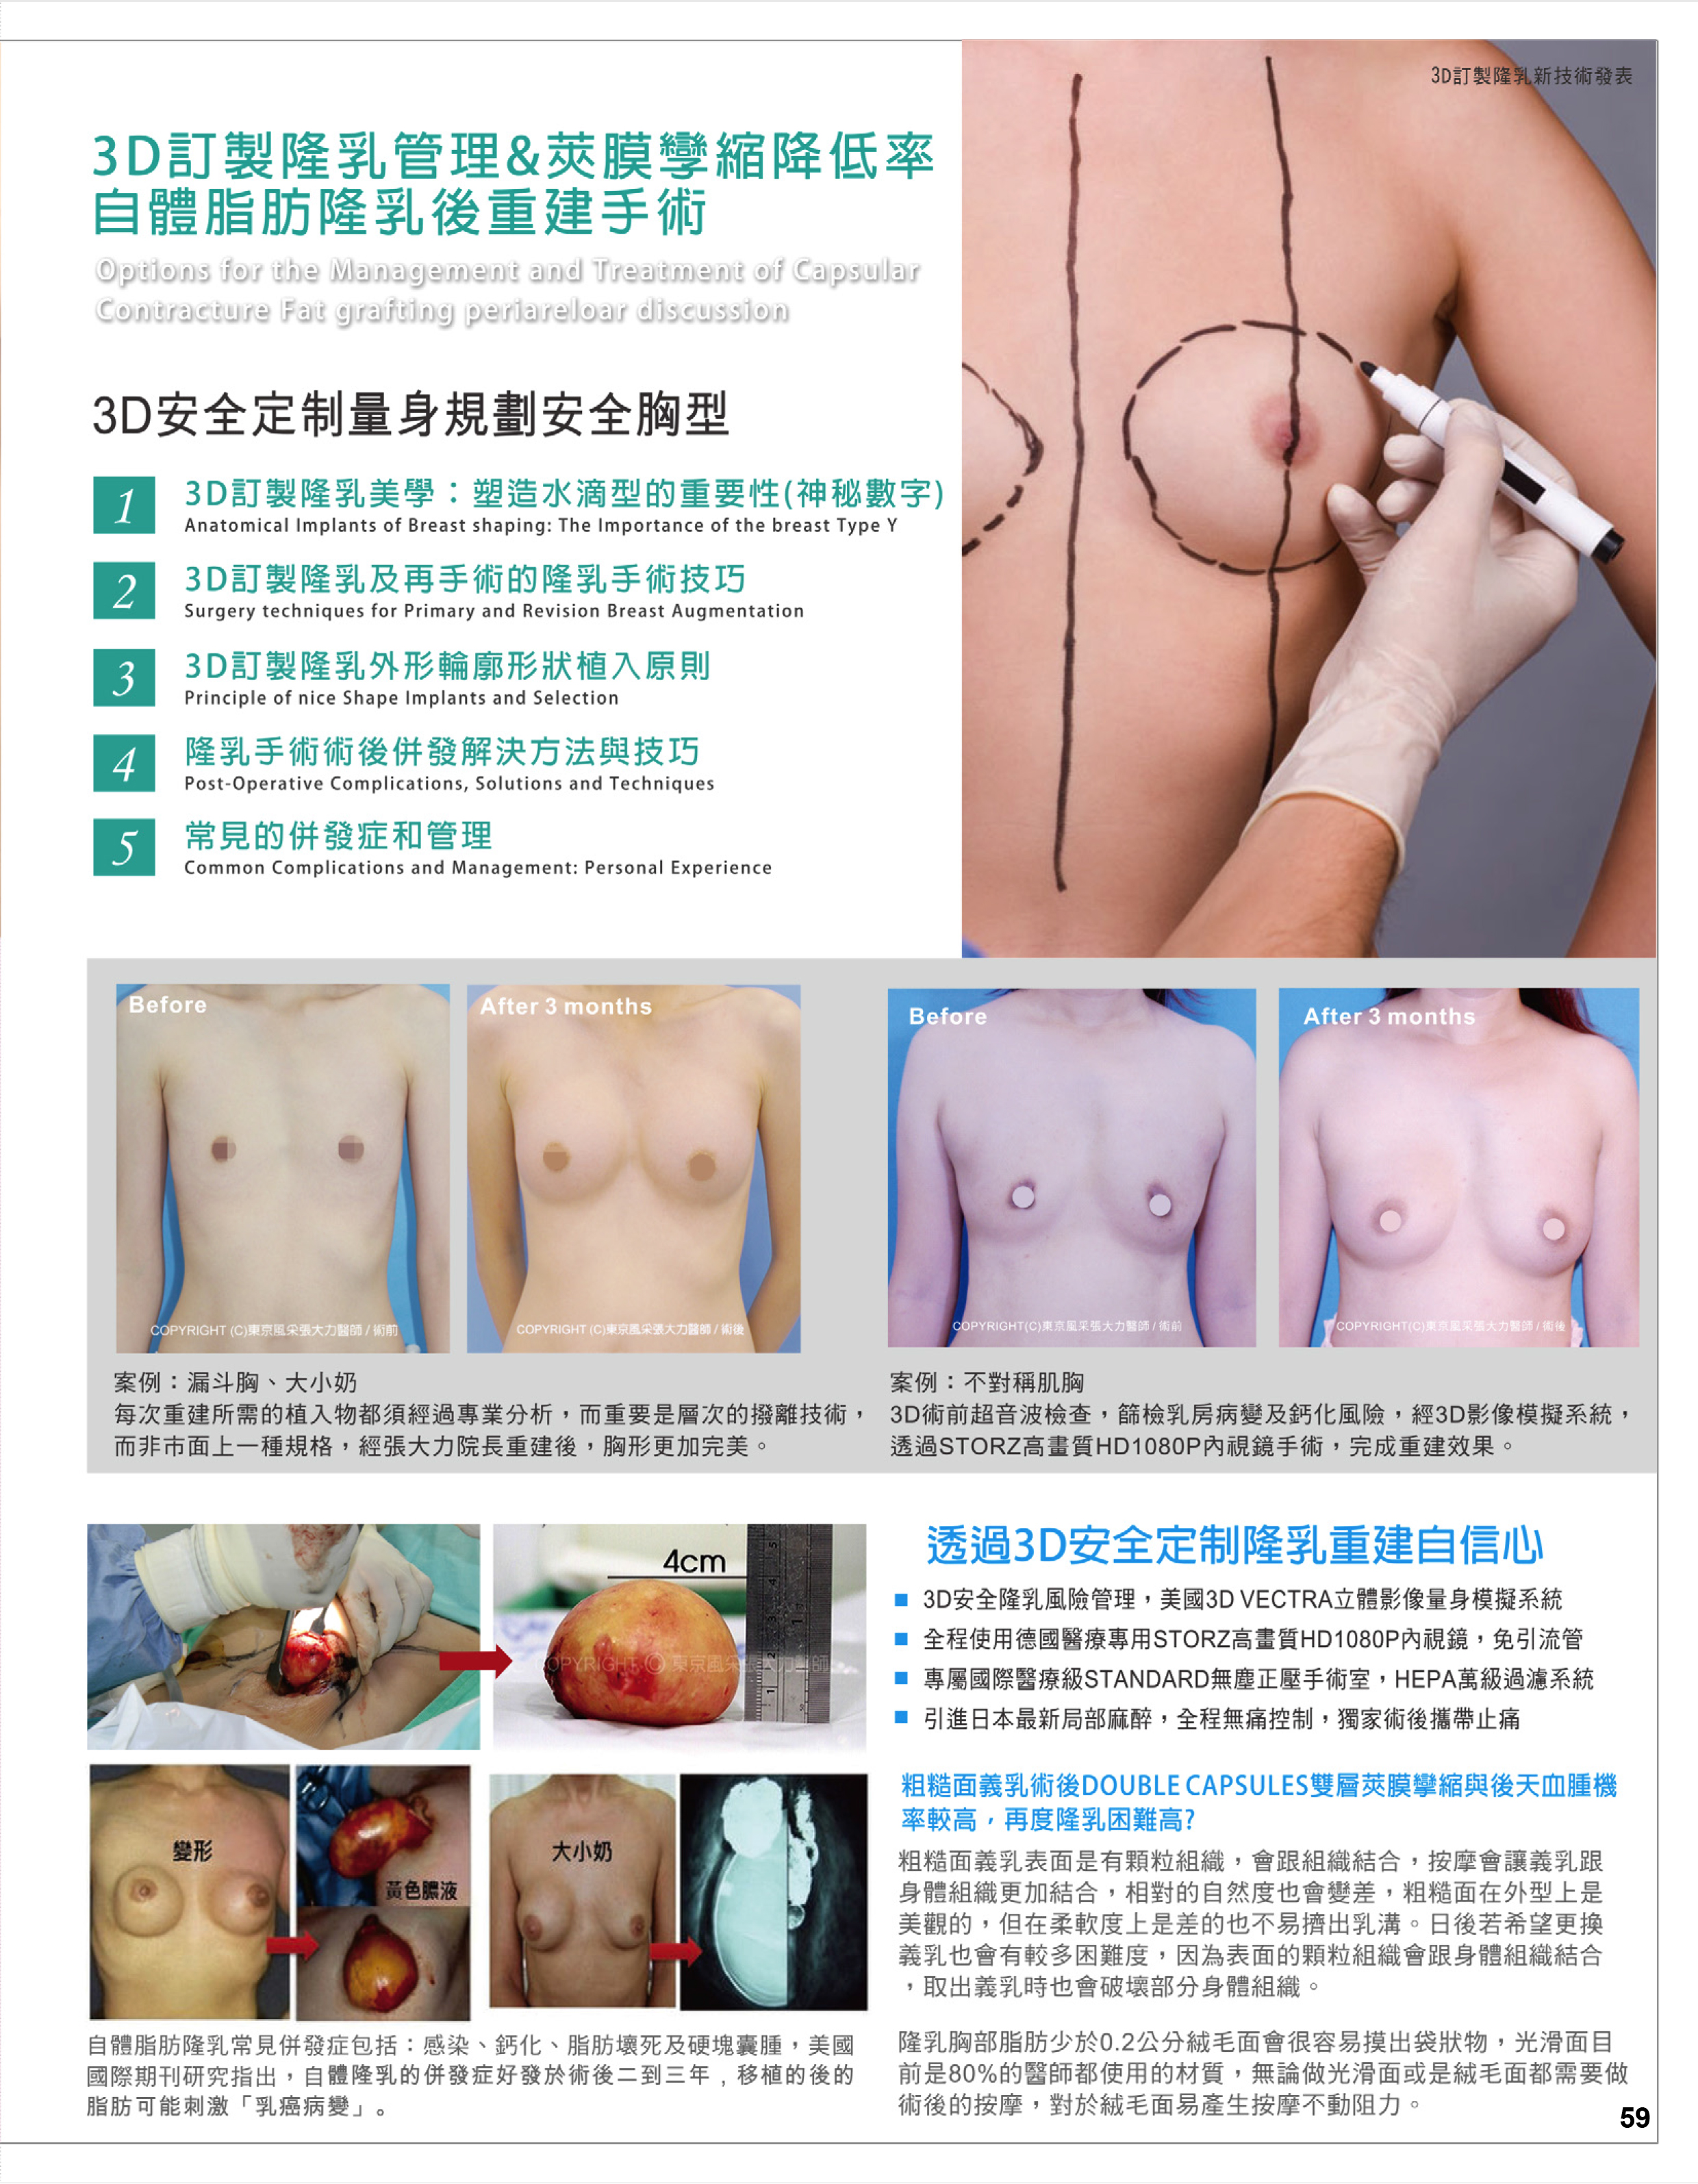 3D隆乳量身訂製蜜桃胸 -雜誌專訪-張大力-整形名醫-東京風采